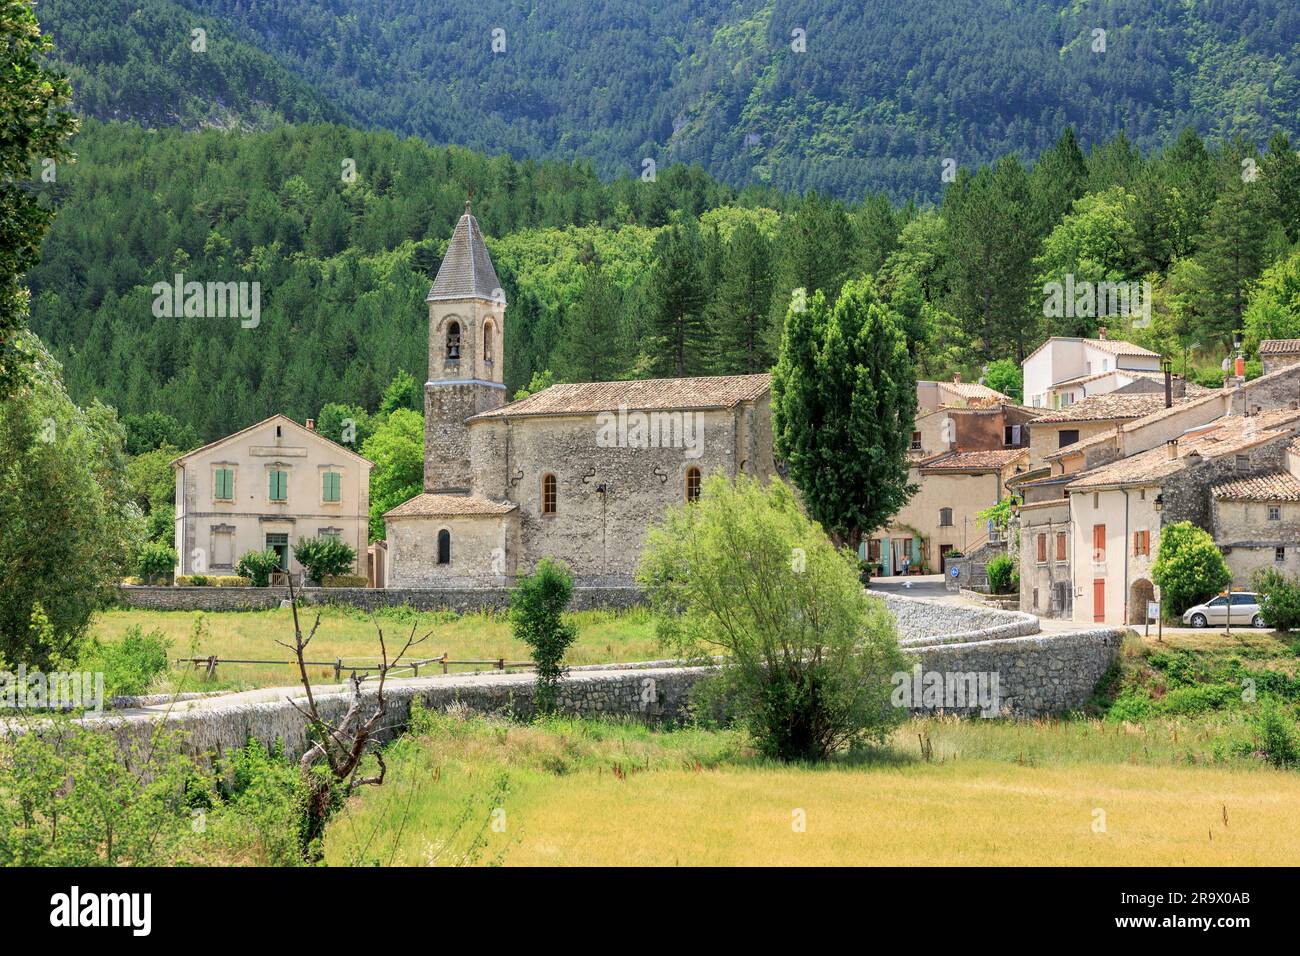 Das ländliche Dorf Savoillan, Carpentras, Vaucluse, Provence-Alpes-Cote-d'Azur, Frankreich Stockfoto